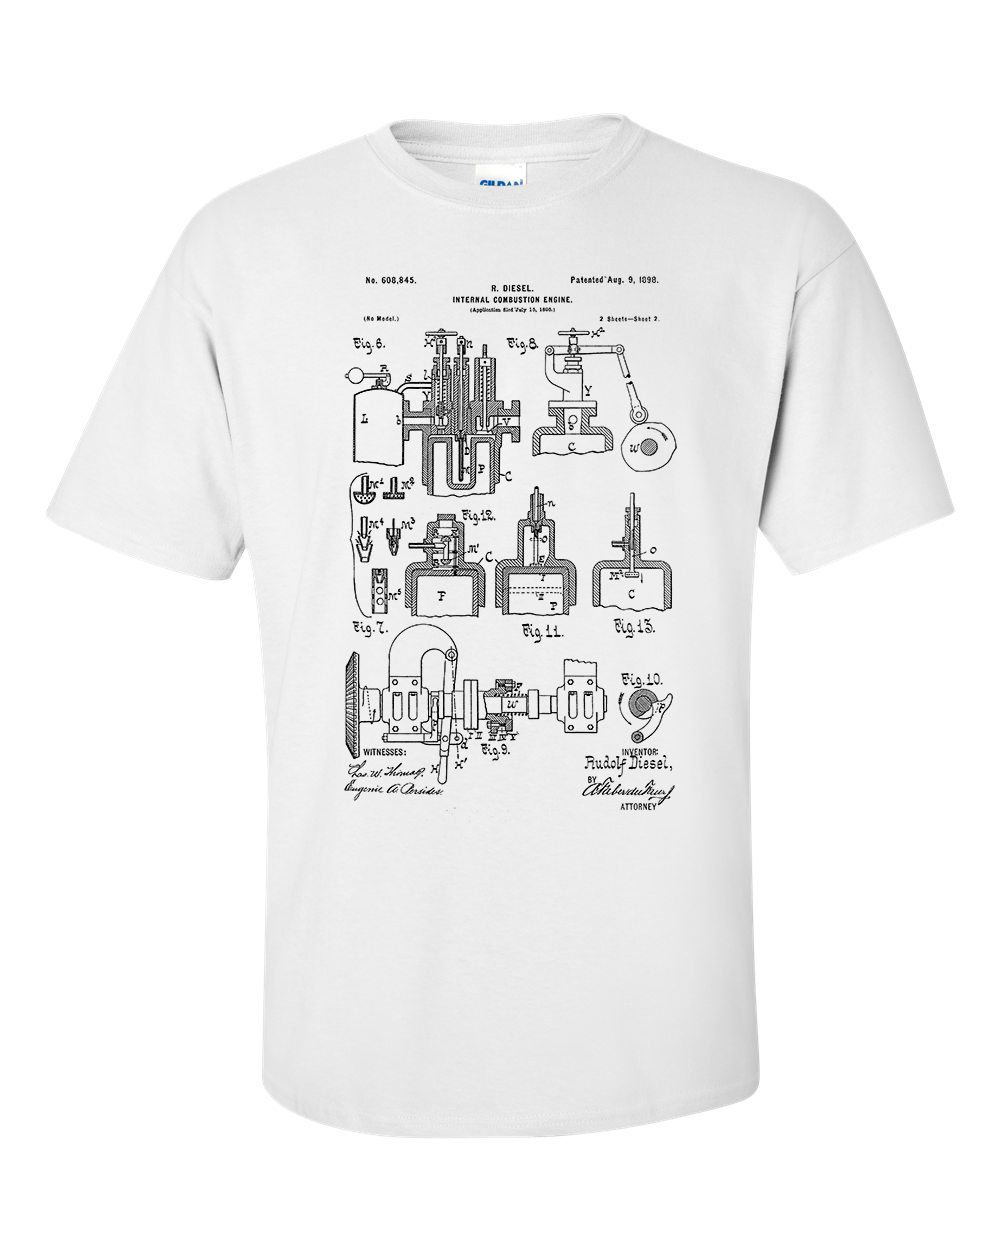 Diesel Engine T-Shirt Rudolf Diesel , Invention Patent Shirt